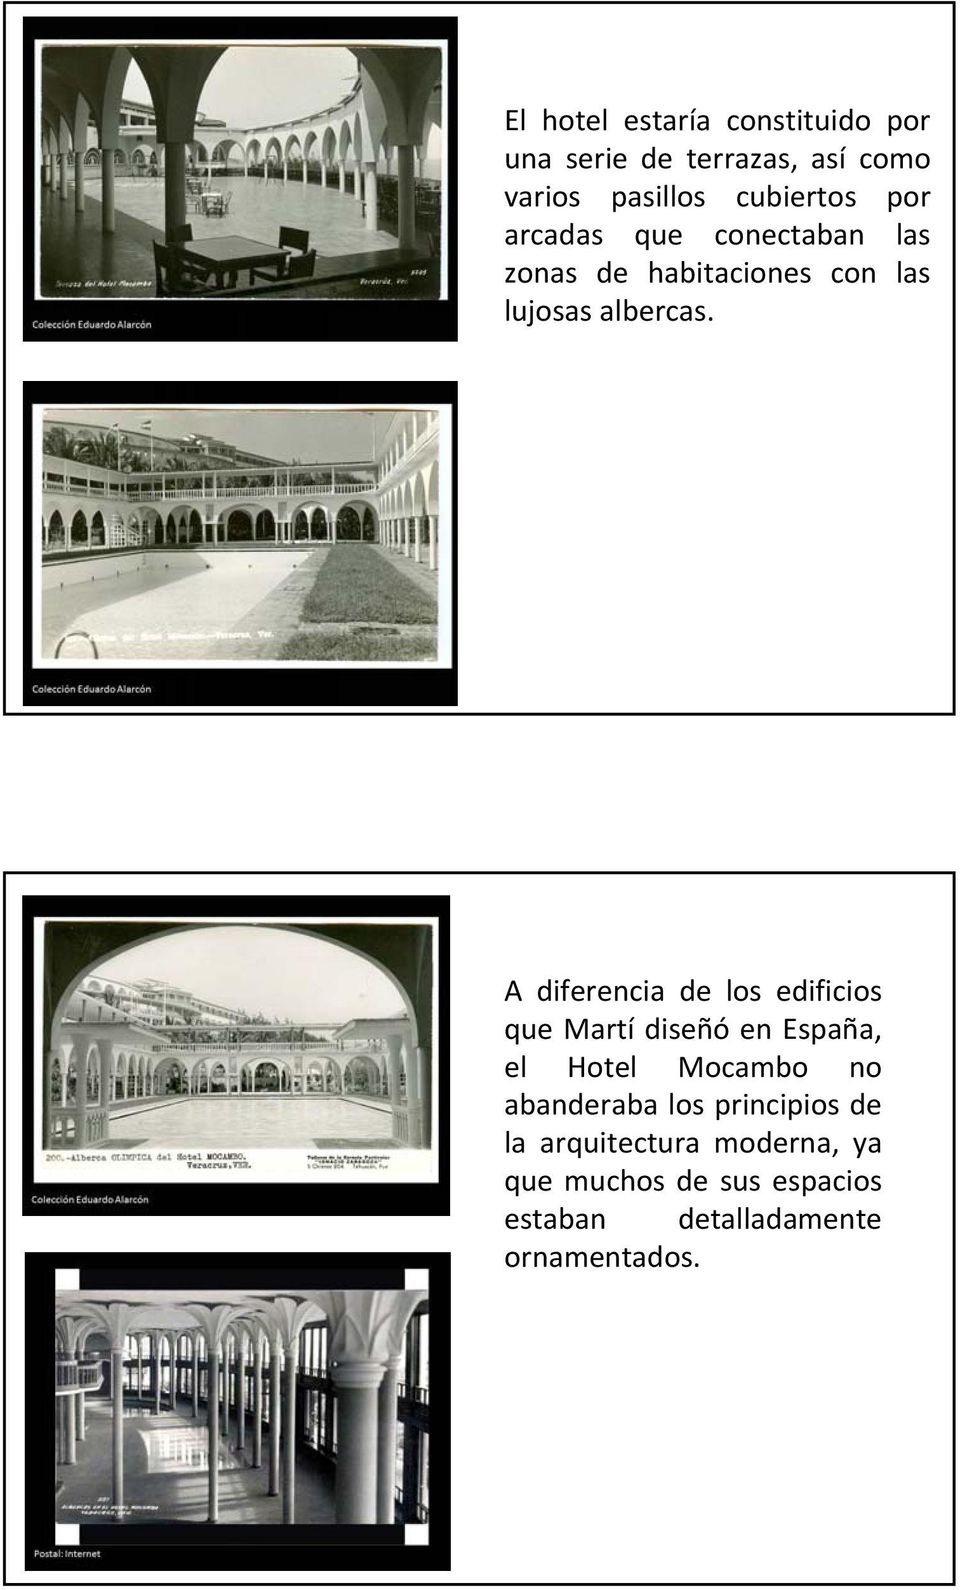 A diferencia de los edificios que Martí diseñó en España, el Hotel Mocambo no abanderaba